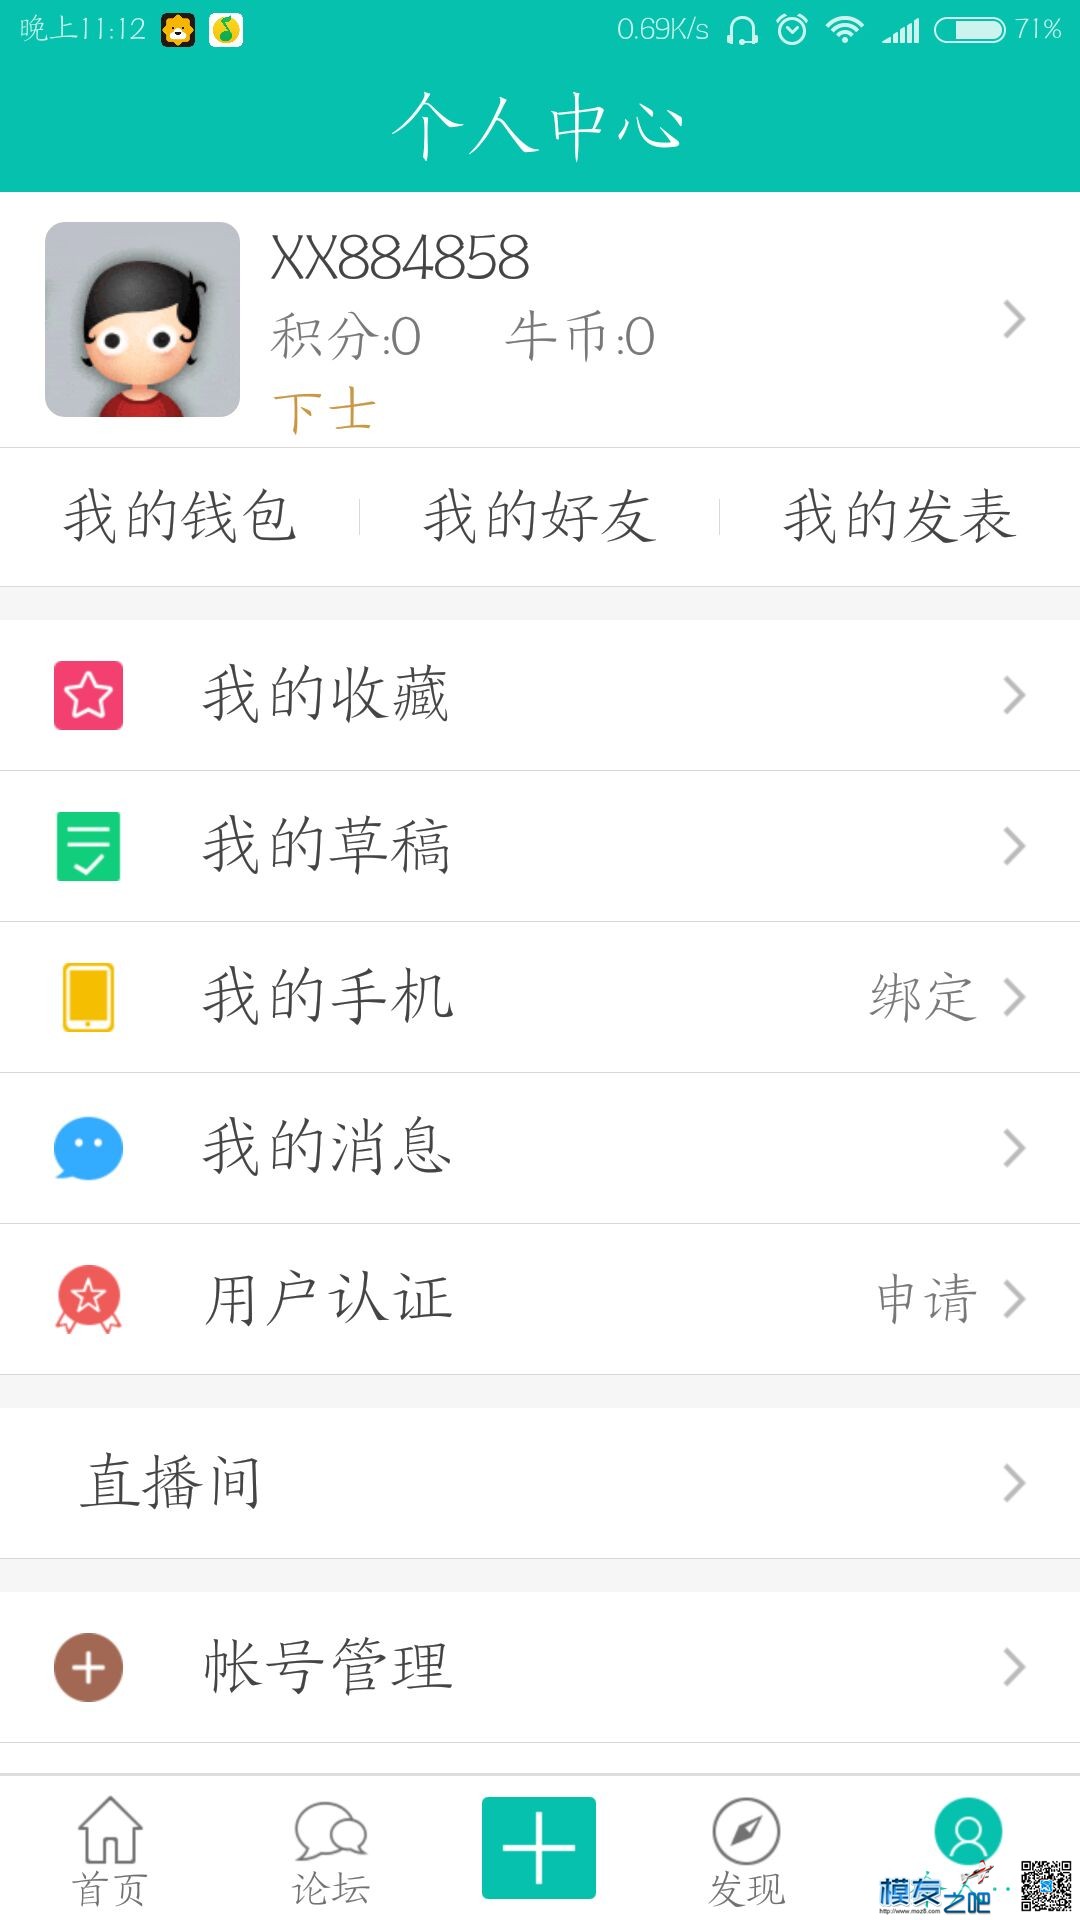 【模友之吧】100个aomway5.8G-500mw图传用于论坛推广！  作者:zhangyiyun2014 1133 